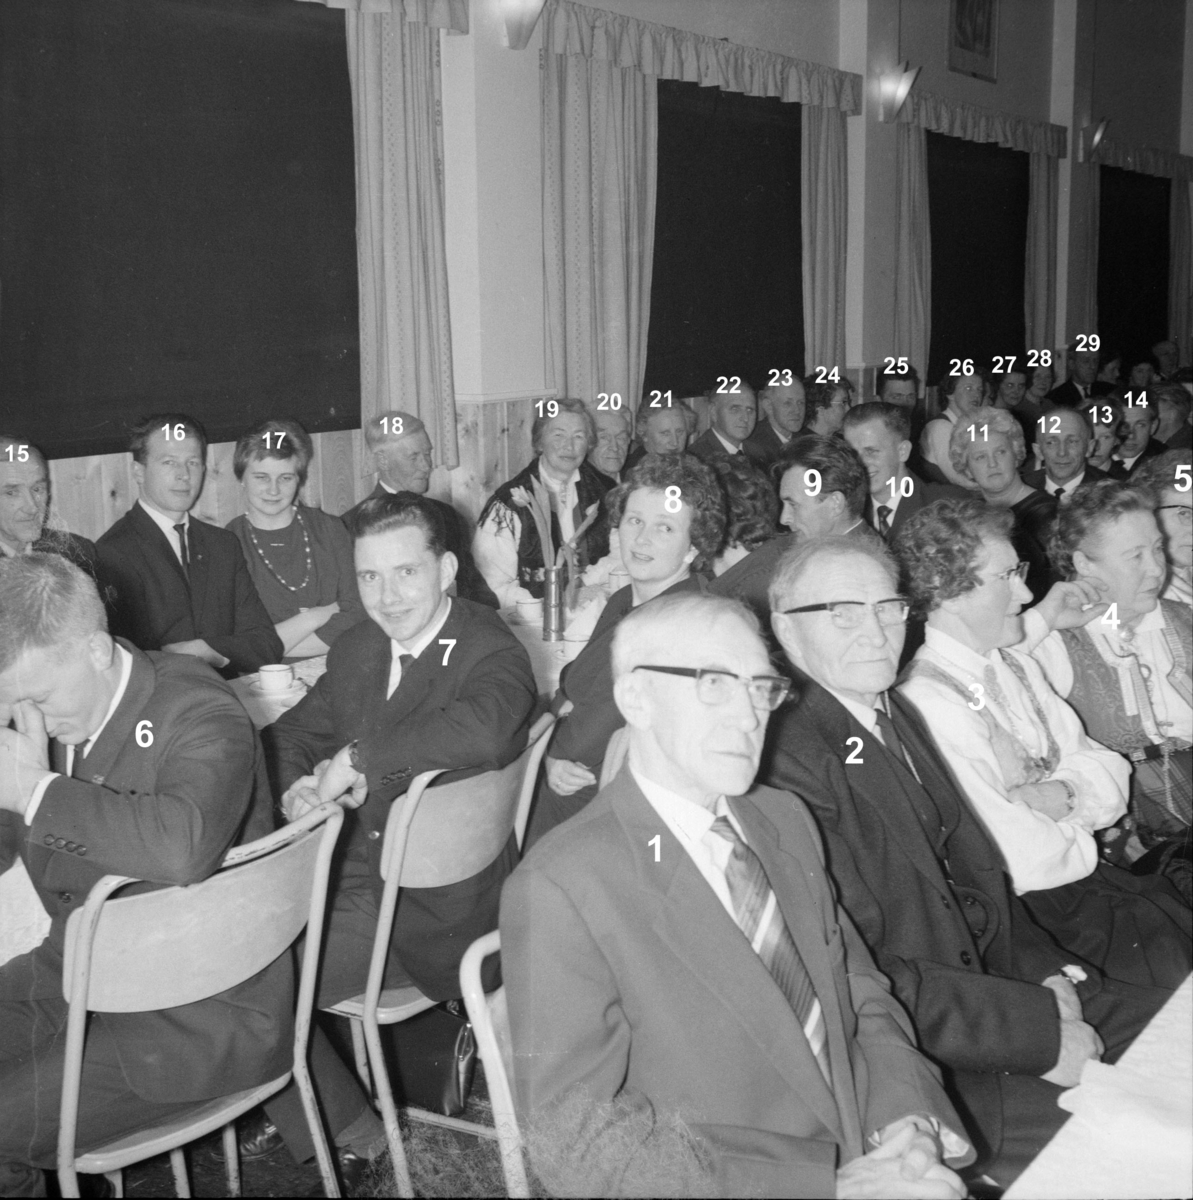 Jubileumsfest, Ungdomslaget Nytbrott, 1965. Å Samfunnshus.